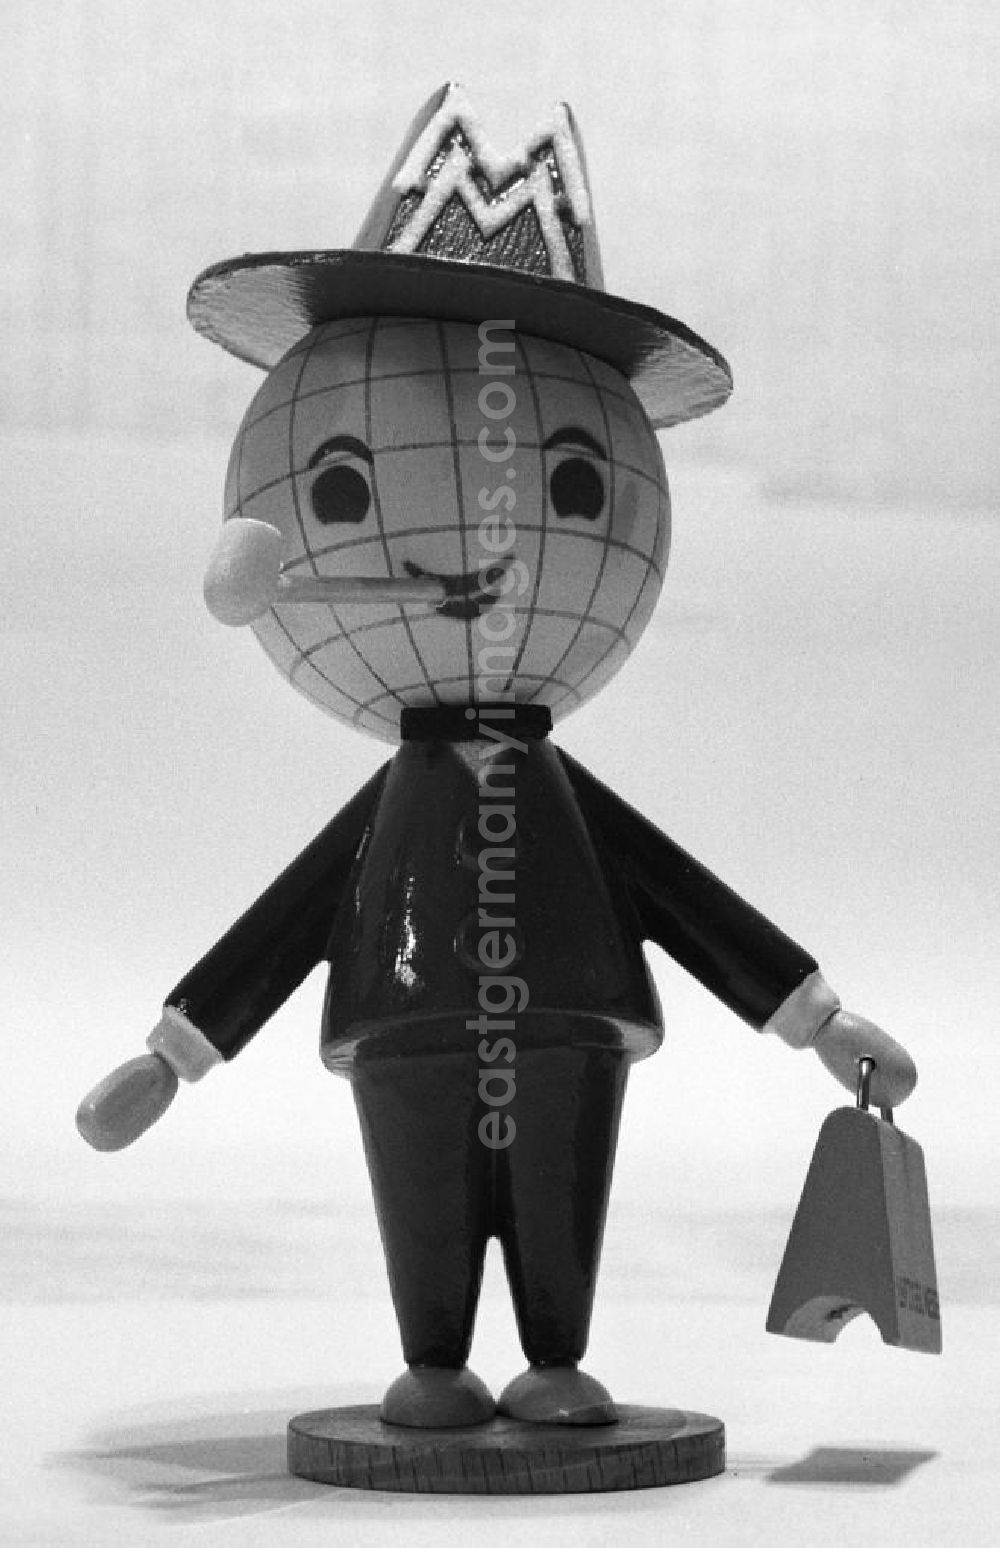 GDR image archive: Leipzig - Das Messemännchen mit seinem übergroßen Globus-Kopf - stets einen Koffer mit dem Messelogo in der Hand und eine weiße Pfeife im Mund - war seit 1964 das Maskottchen der Leipziger Messe in der DDR. Es warb über 3